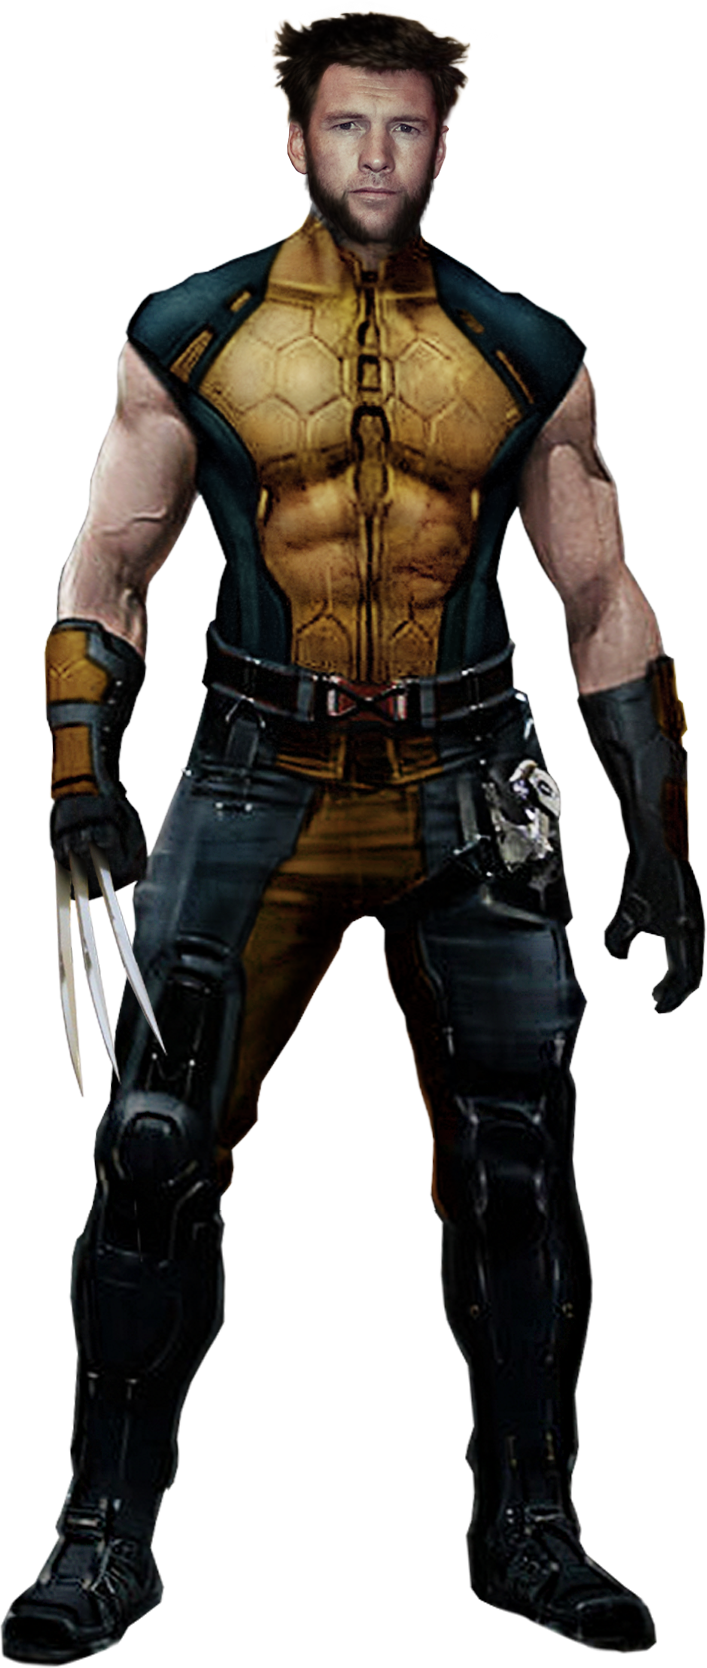 Mcu X Men Wolverine Sam Worthington By Marcellsalek 26 On Deviantart